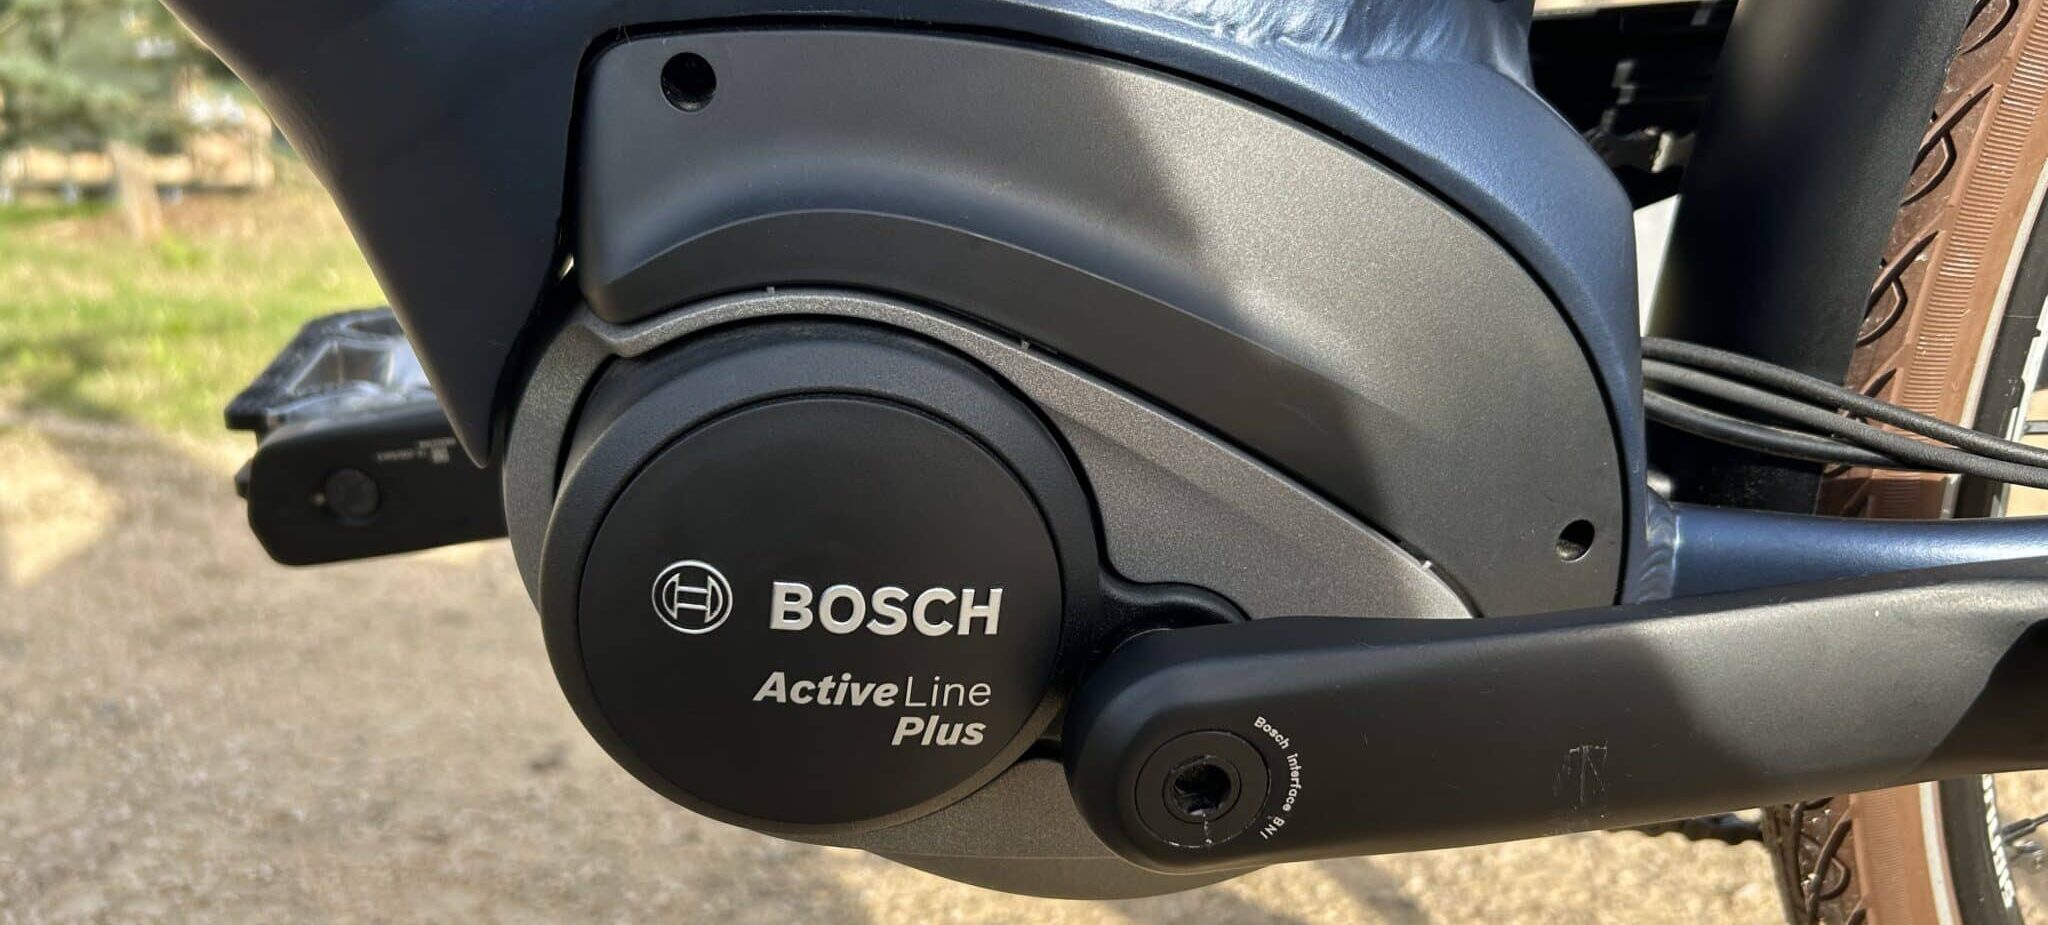 moteur Bosch Active Line Plus Wayscral Everyway E450